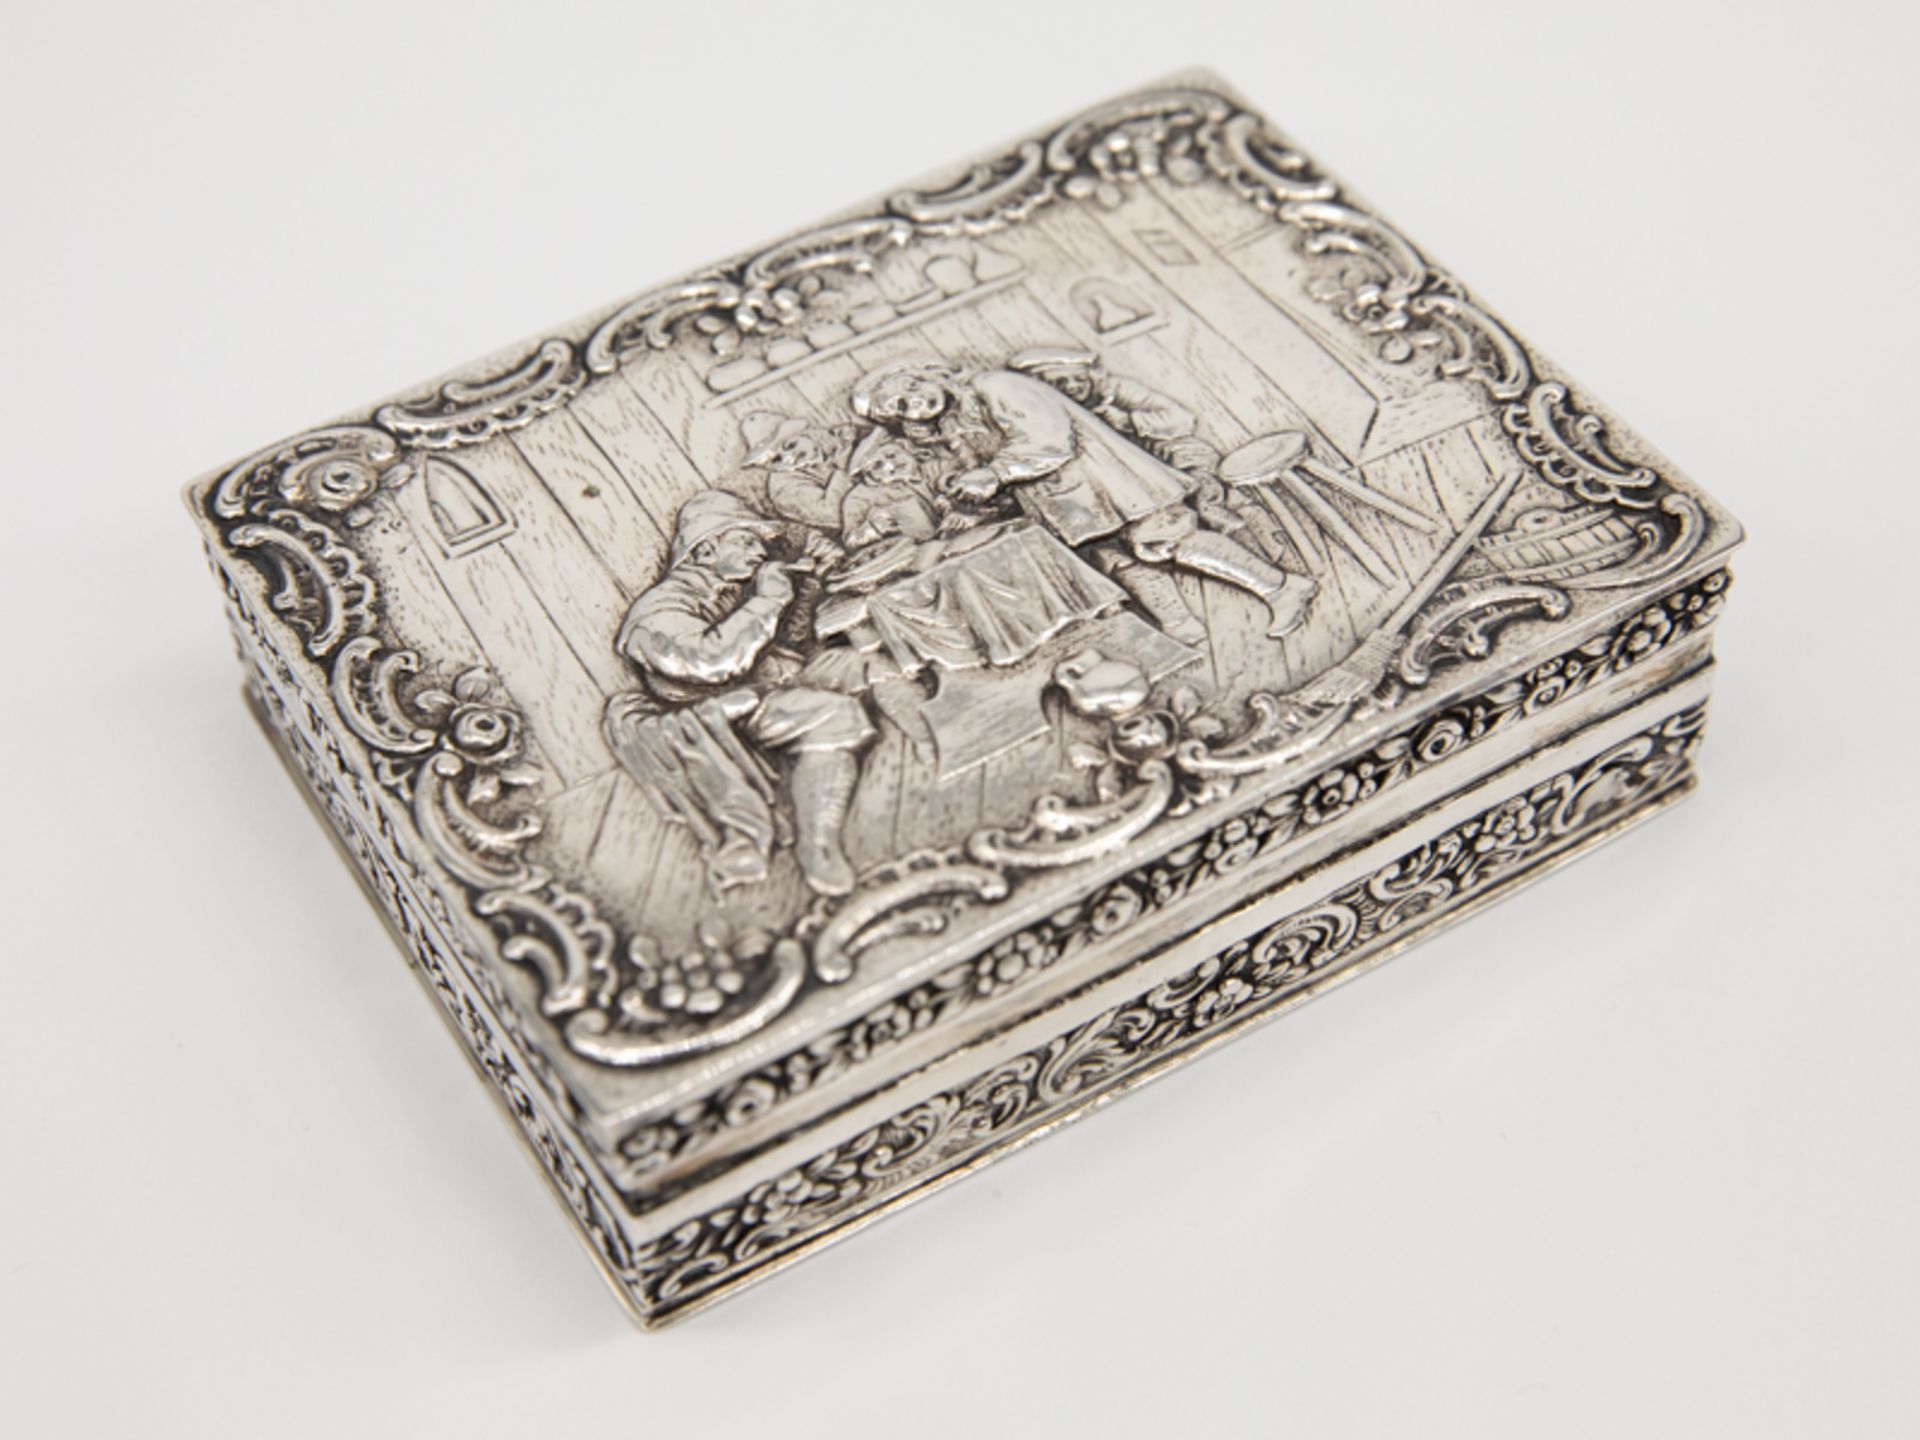 Tischdose mit Genremotiv, Deutschland (wohl Hanau), 1. Hälfte 20. Jh. 800/-Silber, ca. 250 g; flache